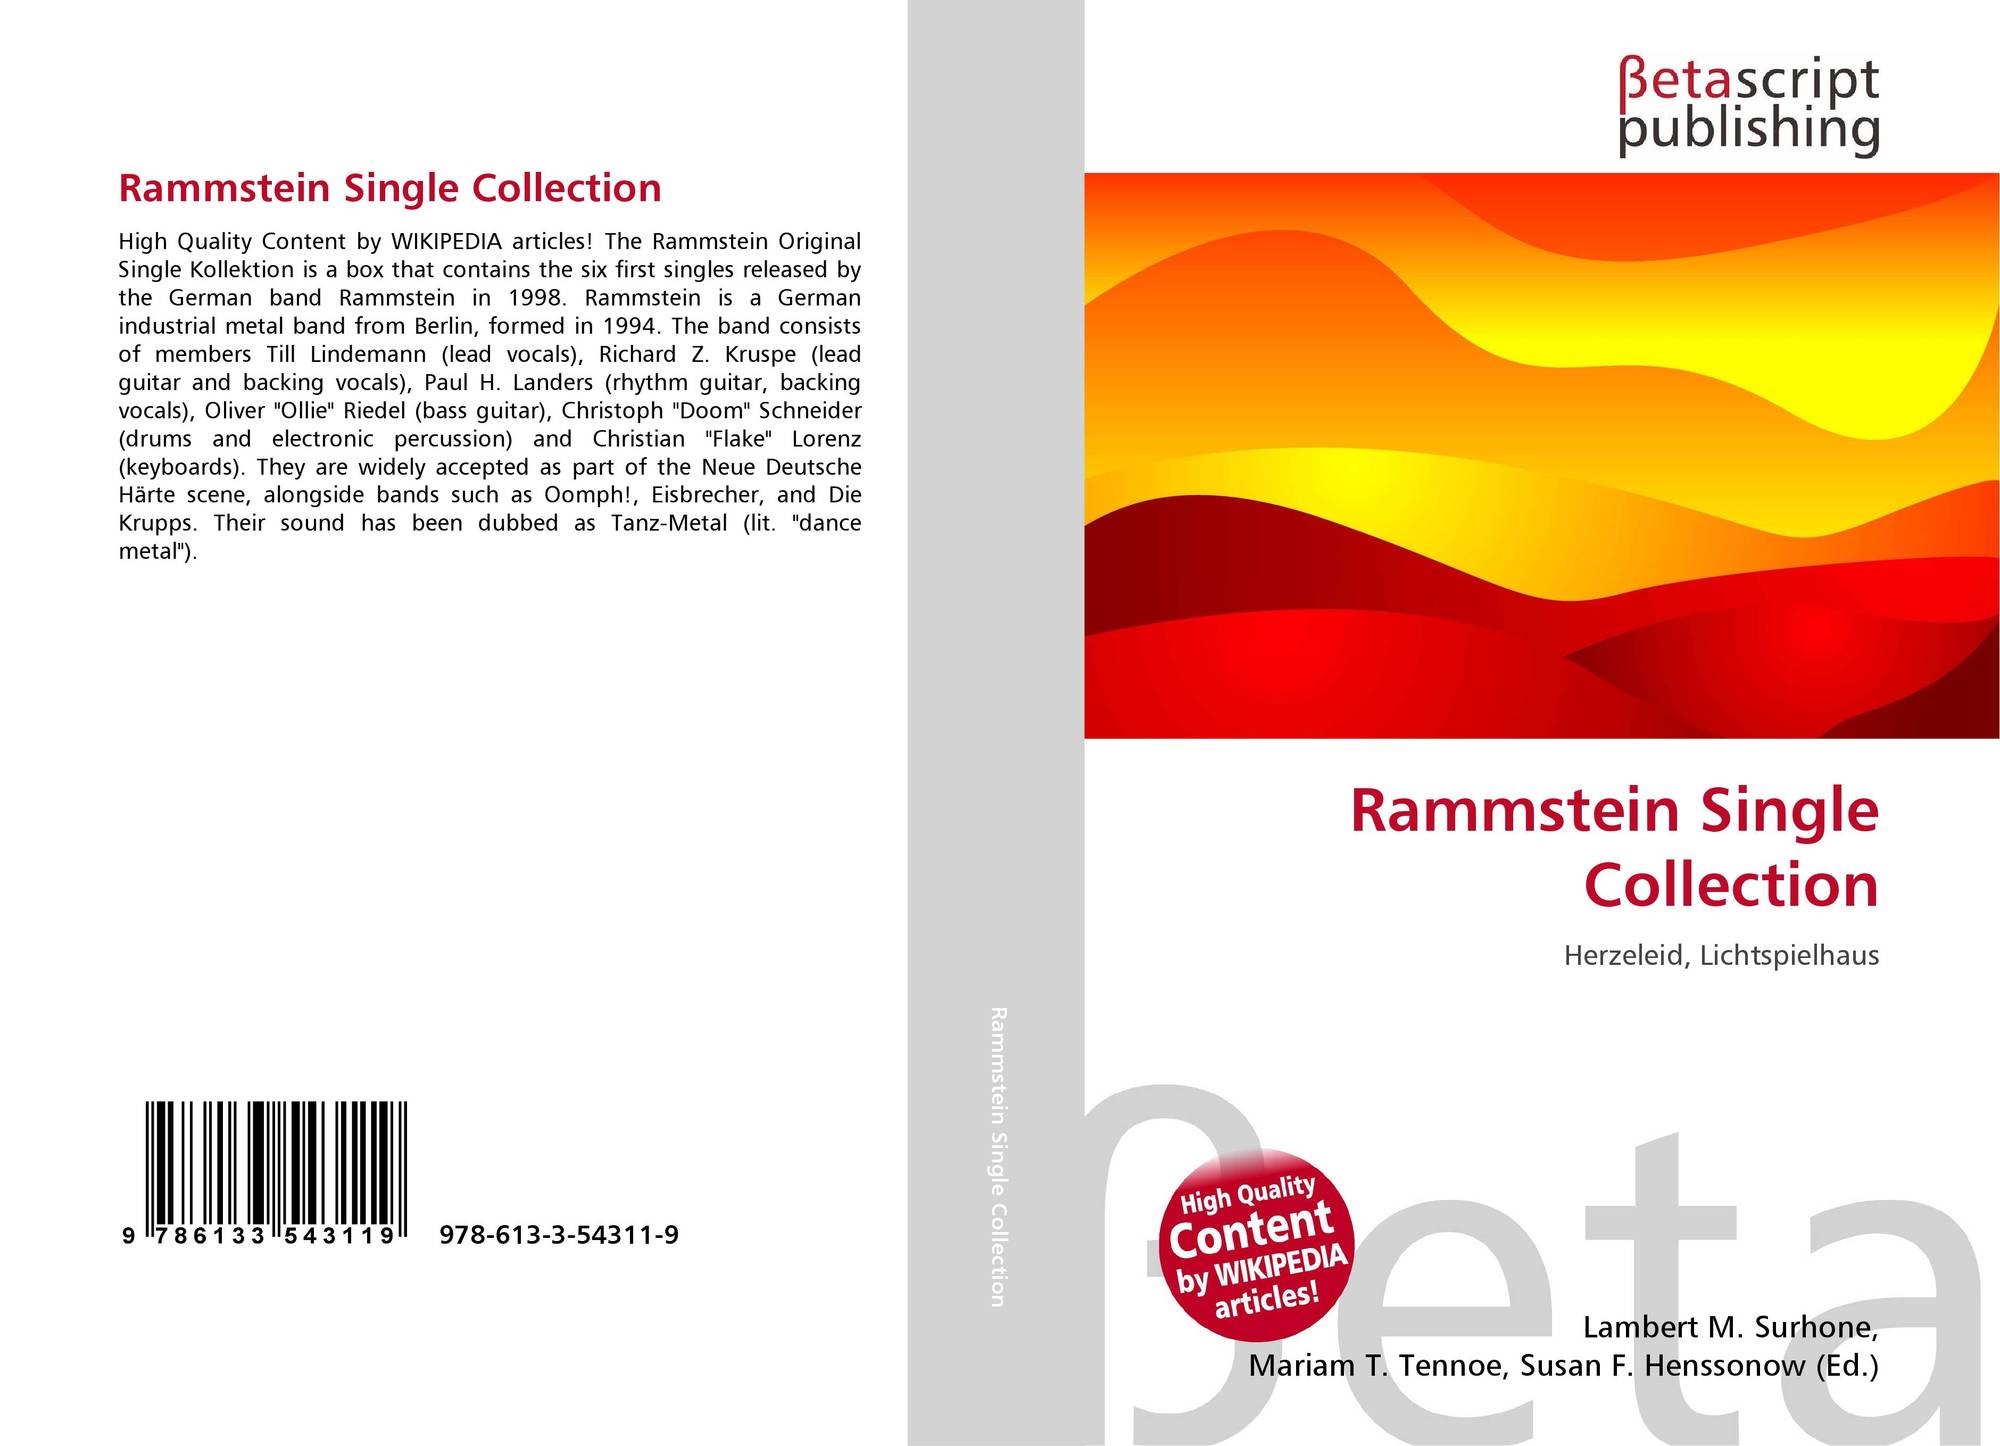 Rammstein singles